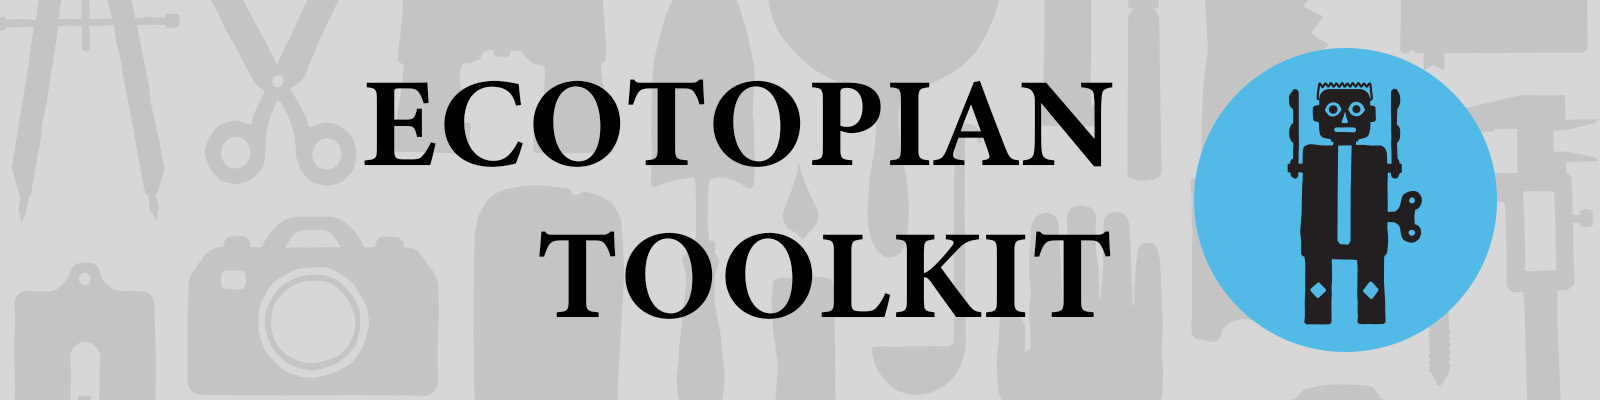 "Ecotopian Toolkit" logo.